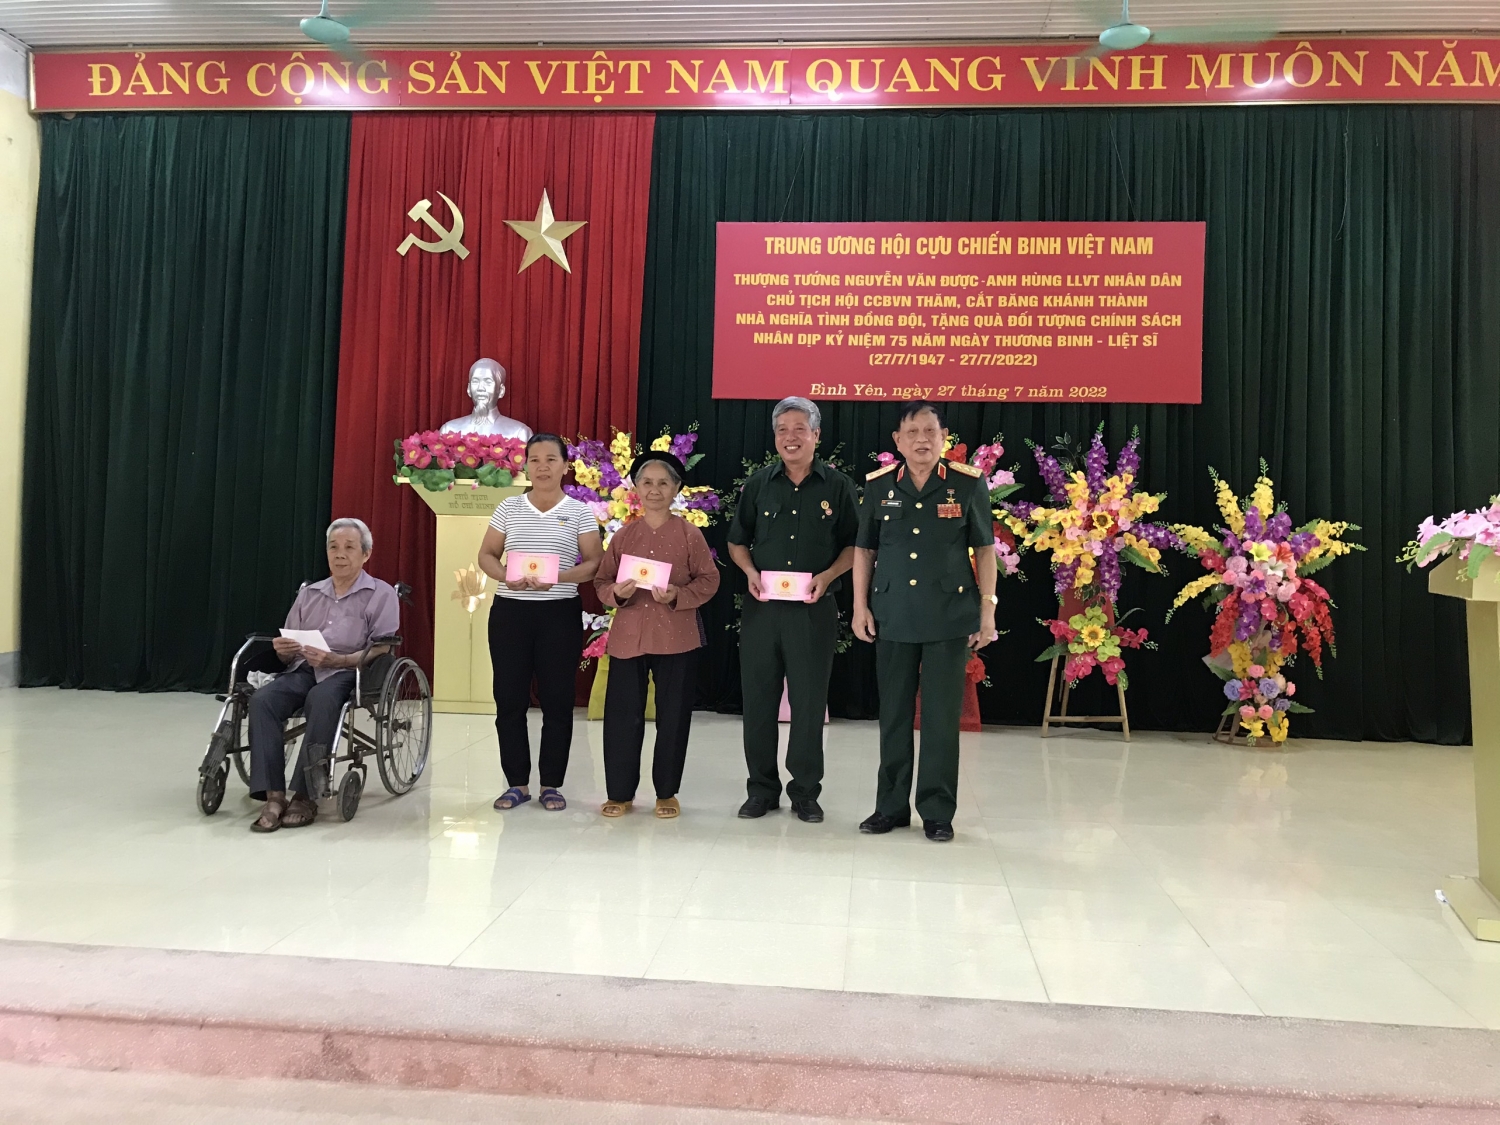 Hội CCB Việt Nam và Hội CCB Tập đoàn tặng quà đối tượng chính sách và khánh thành nhà nghĩa tình đồng đội tại tỉnh Tuyên Quang